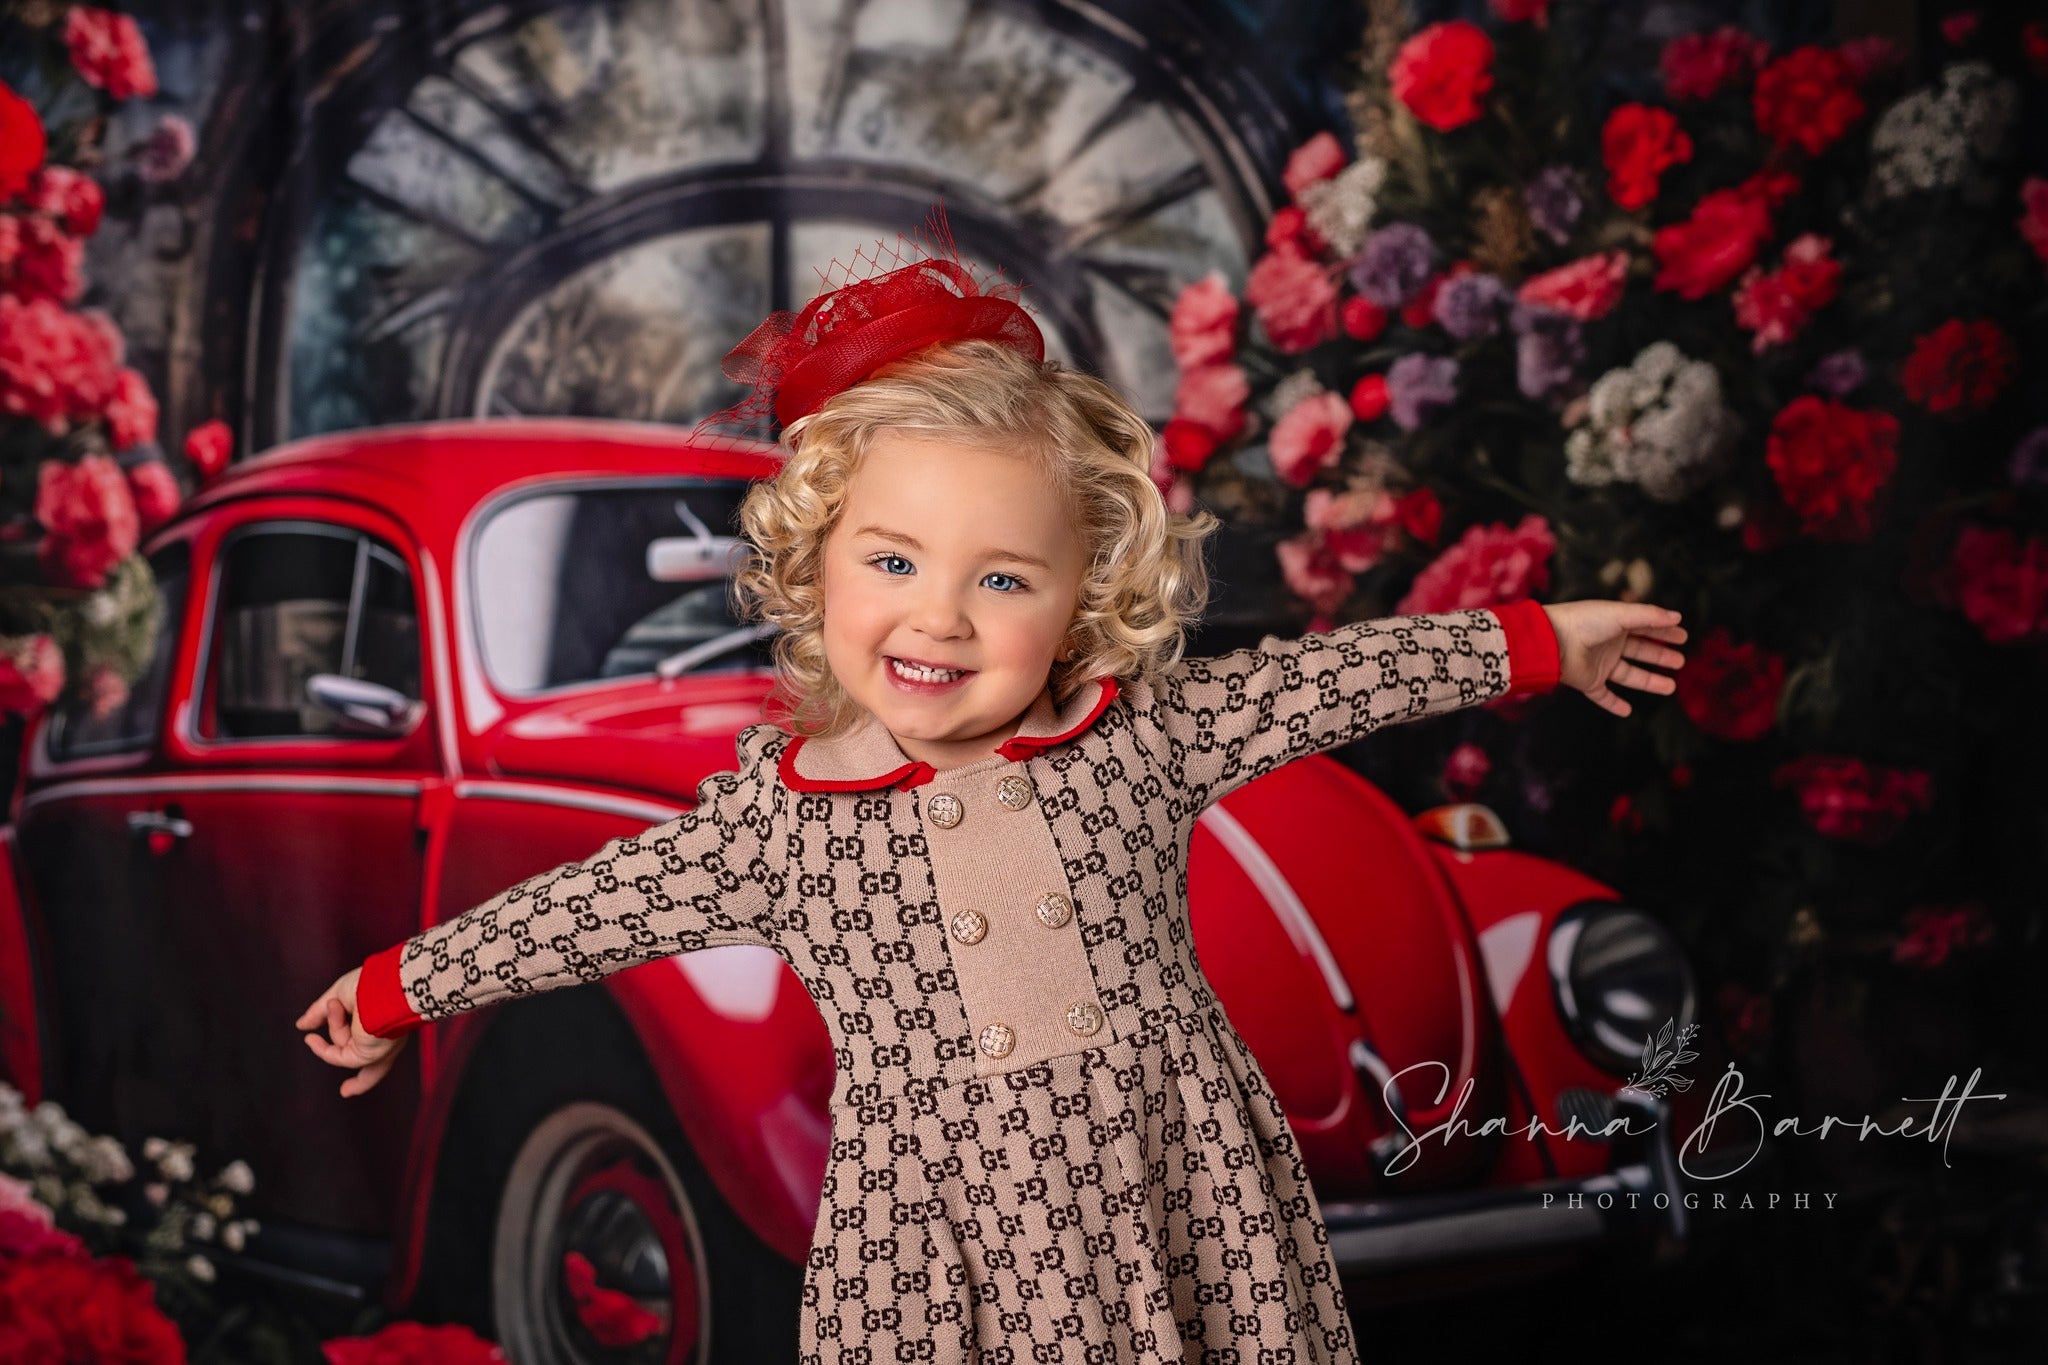 Kate Valentinstag Rotes Auto Hintergrund von Patty Roberts